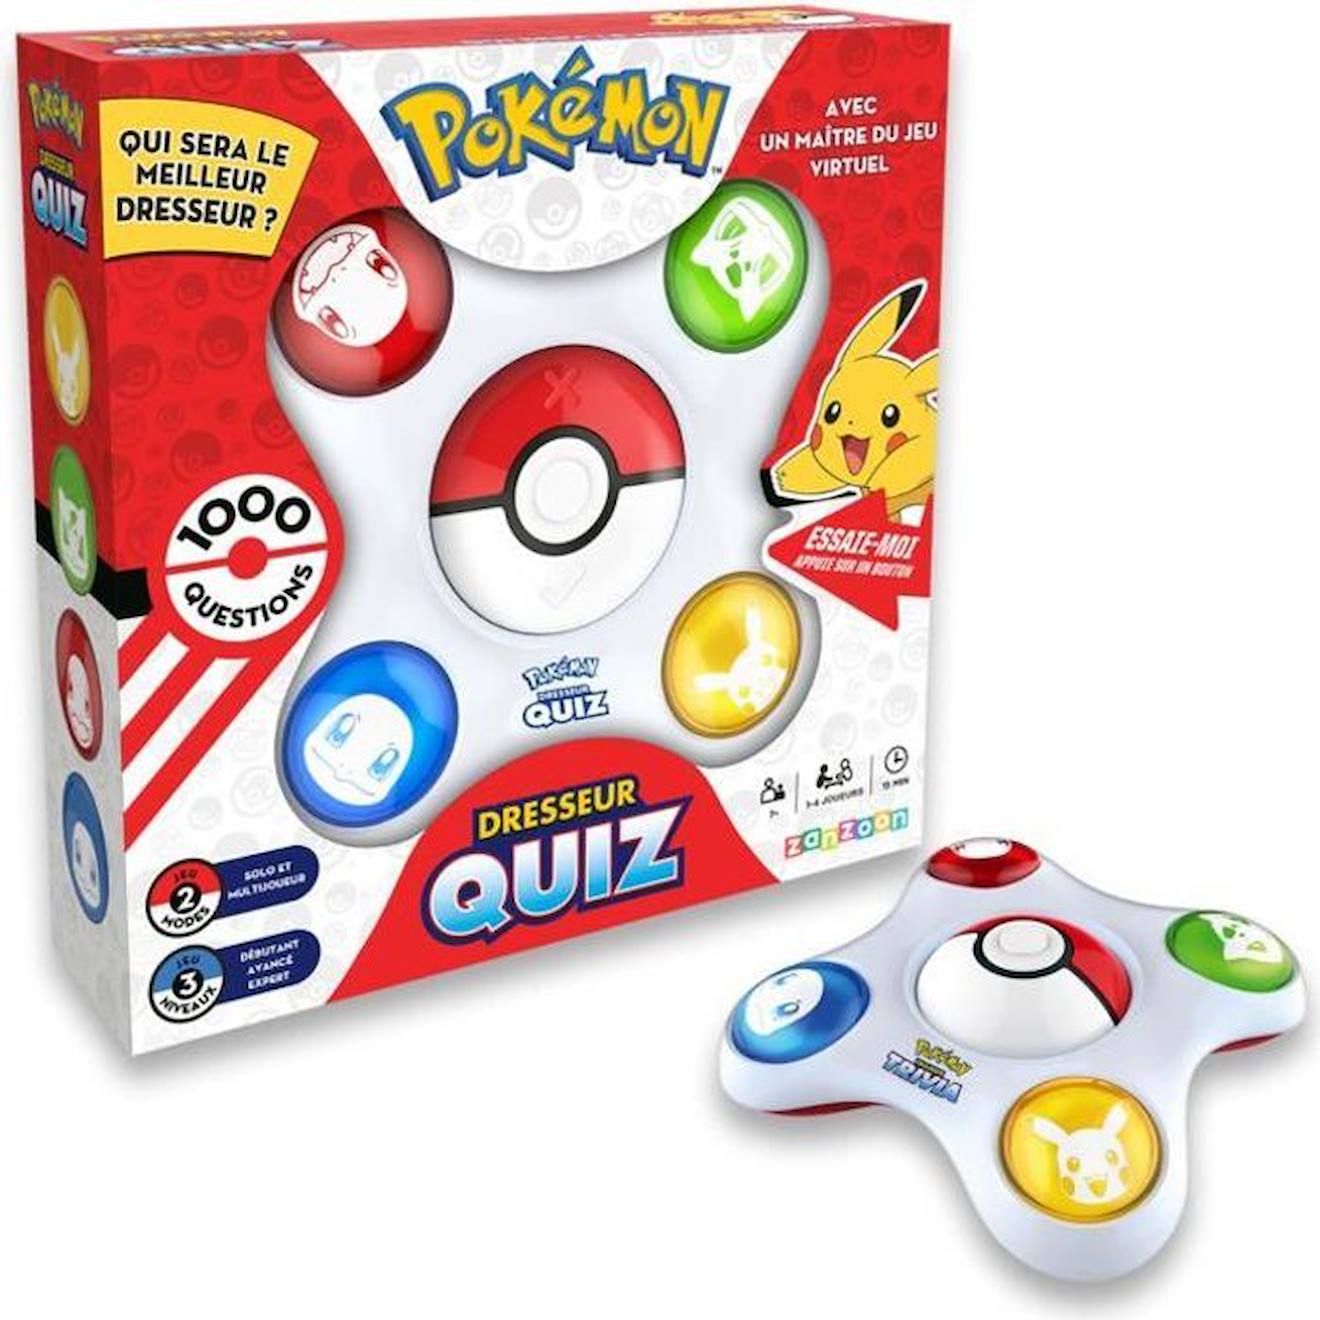 Bandai - Pokémon - Dresseur Quiz - Quiz Connaissances 100% Pokémon - Jeu Électronique Interactif - P